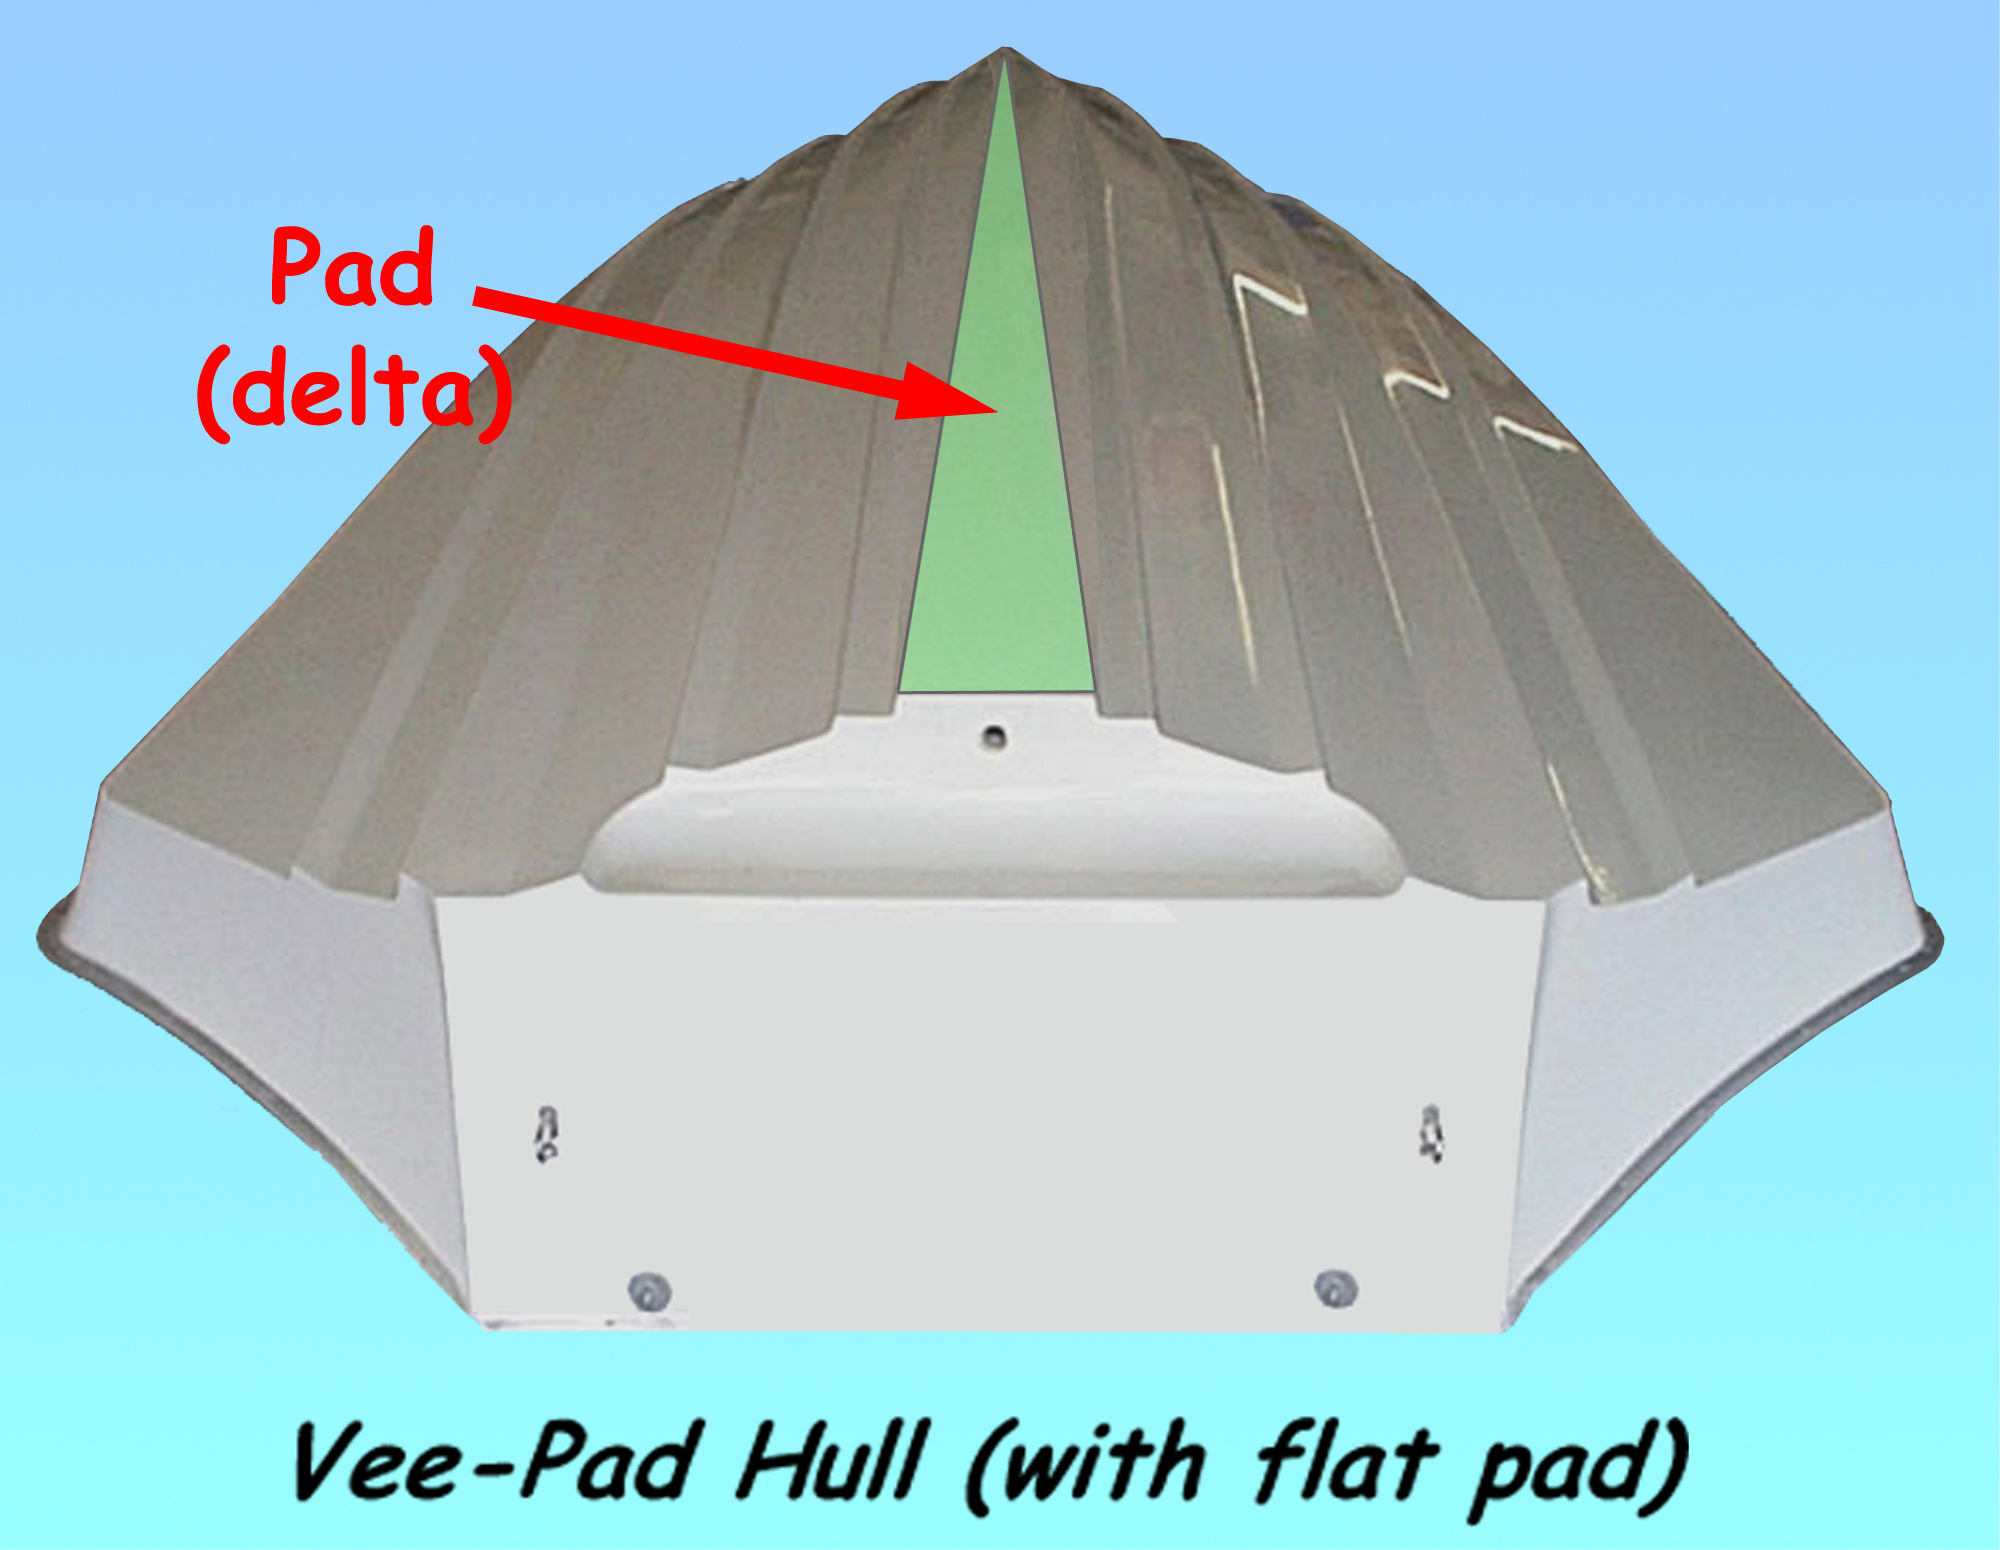 VBDP - Vee-Pad design optimization